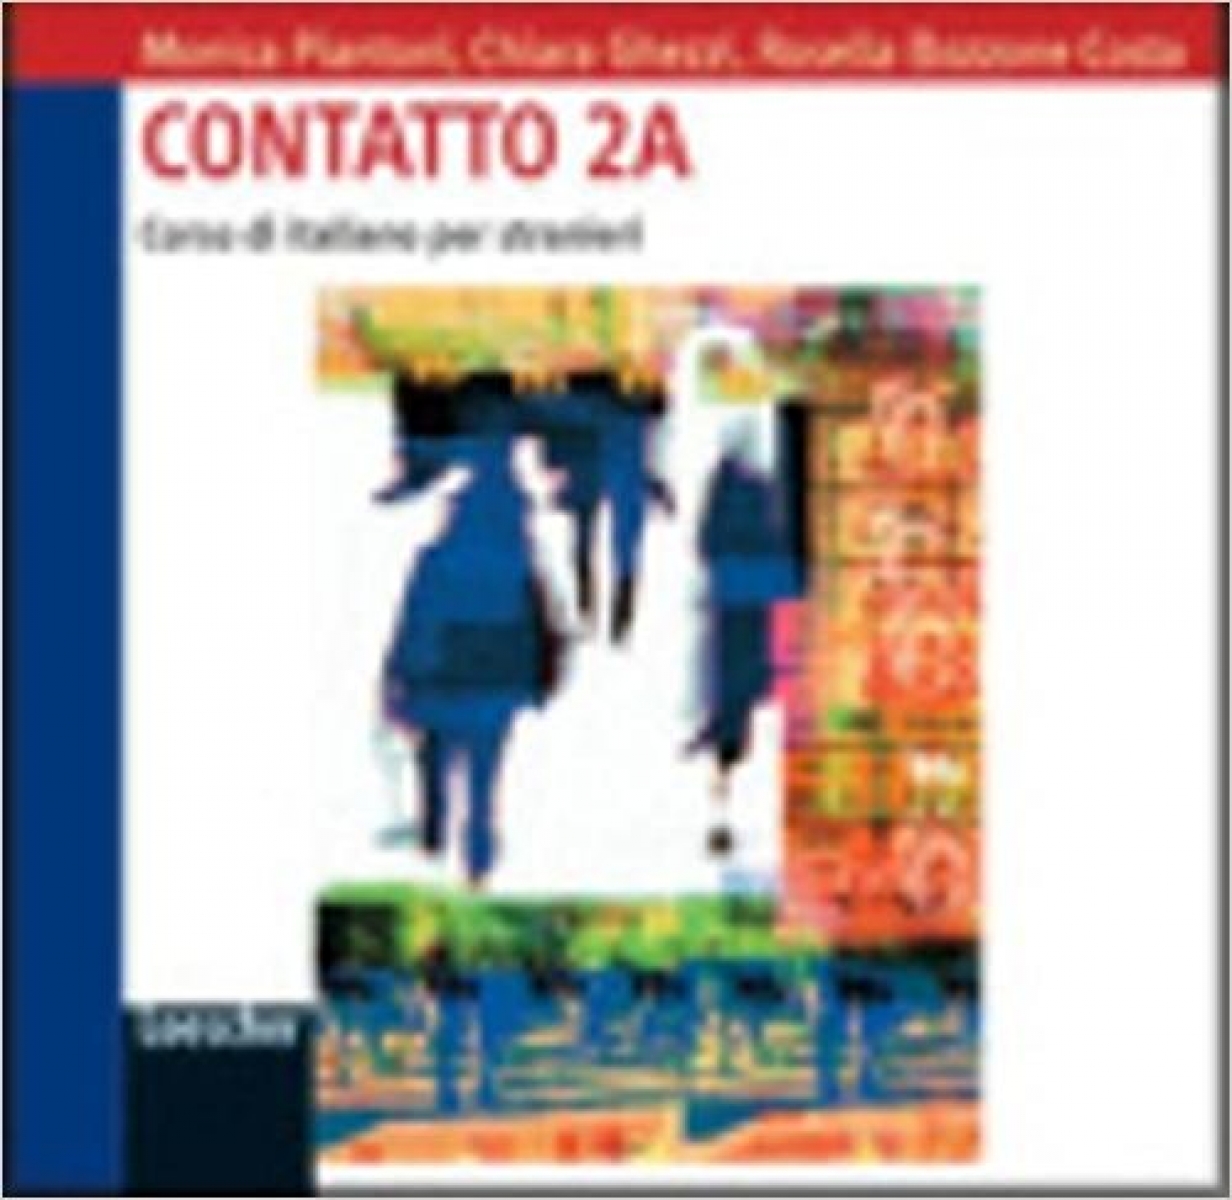 Bozzone Costa, R. et al. Contatto B1 - CD Audio(2) 2A per la classe 